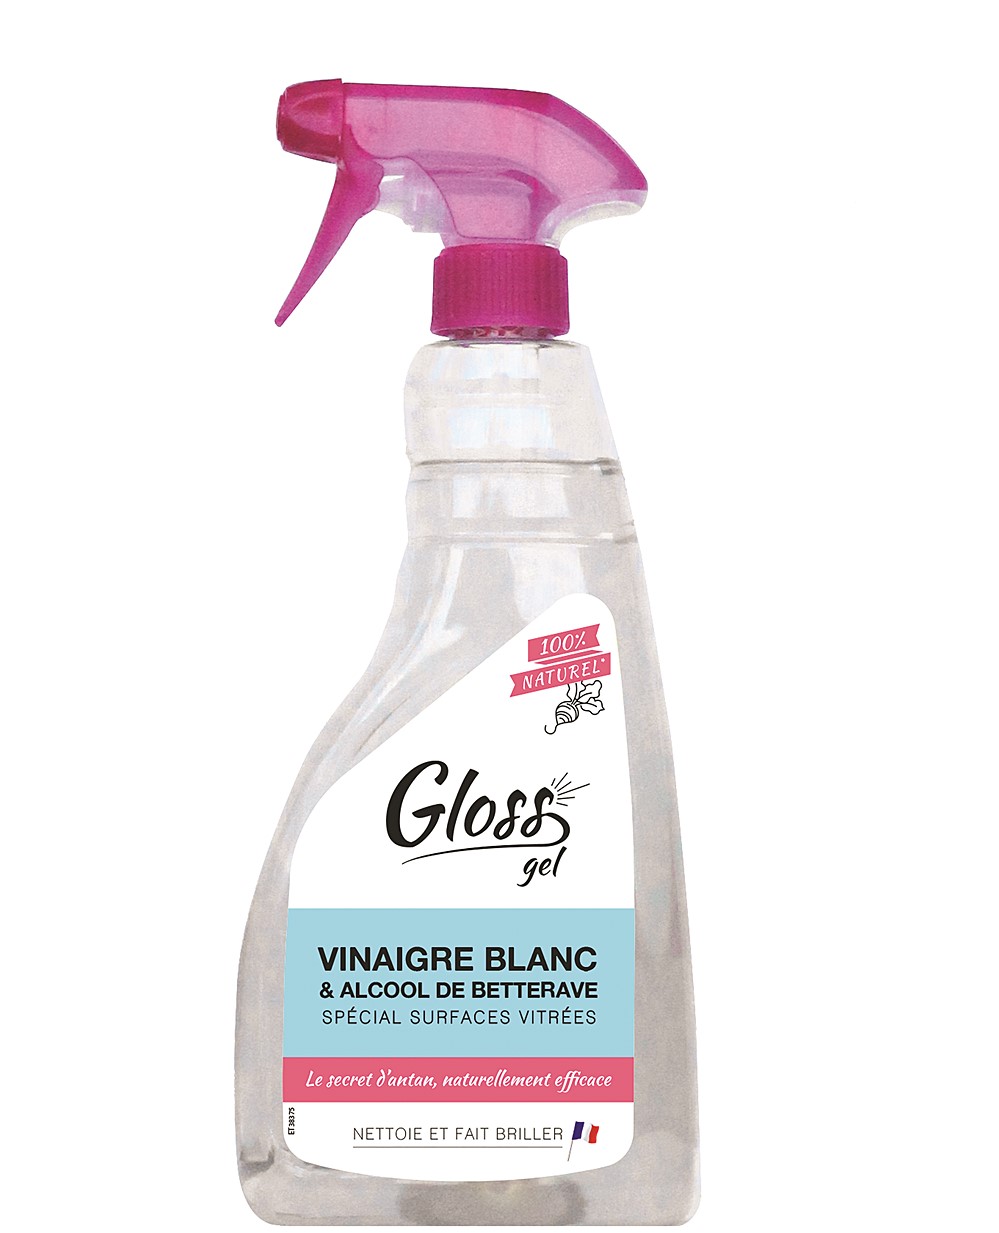 Gloss nettoyant vitres naturel au vinaigre blanc et alcool de betterave 750 ml